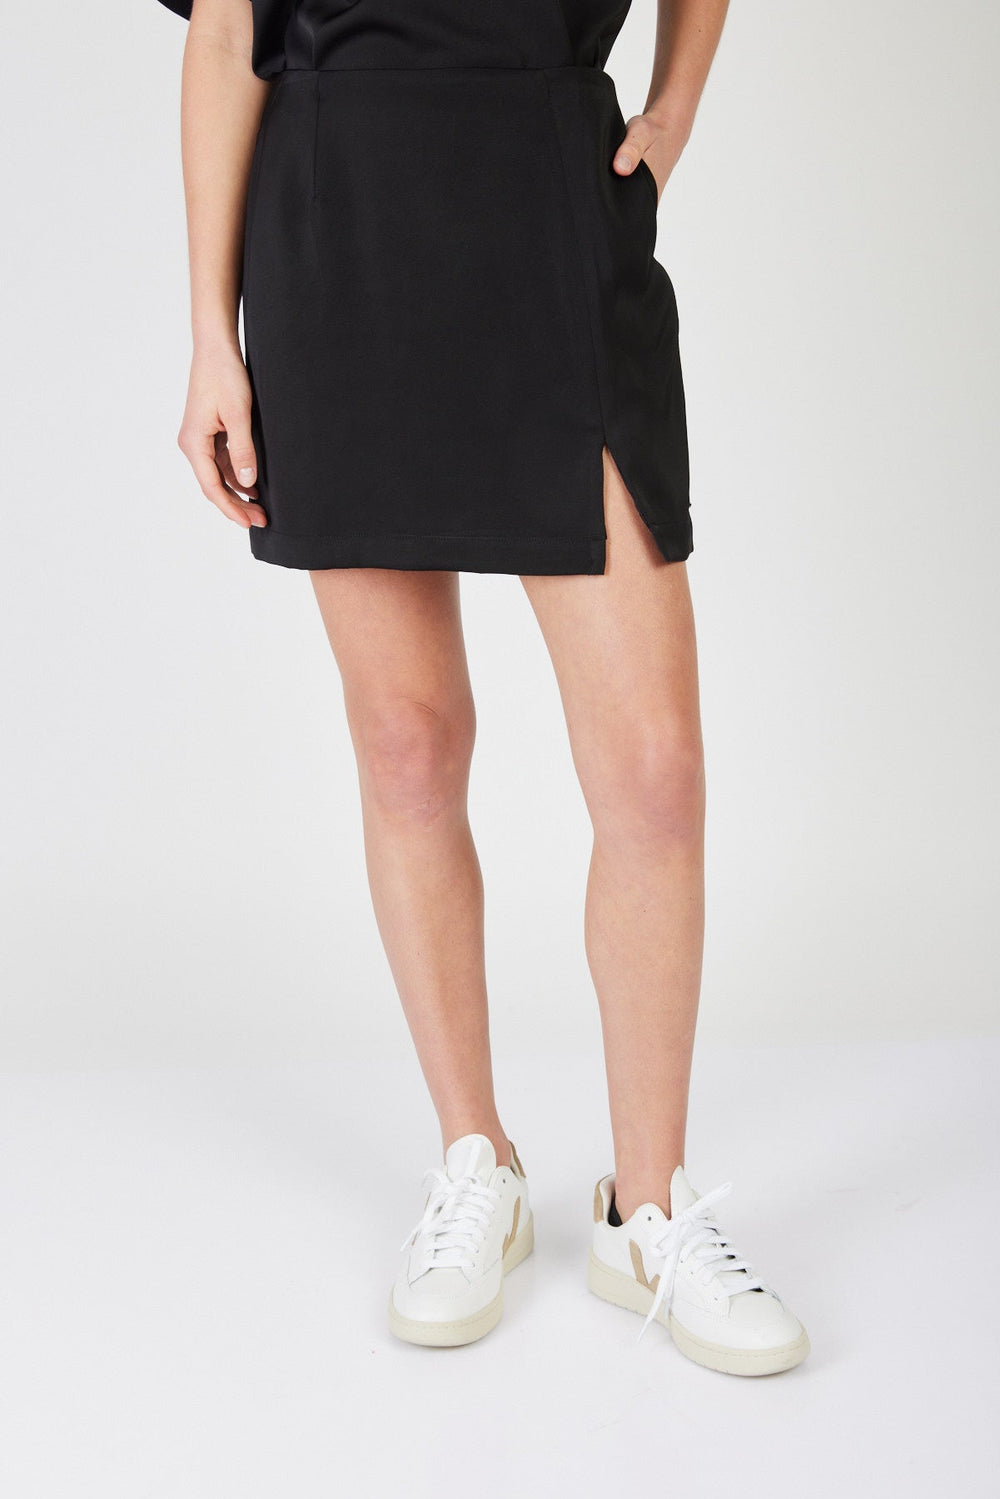 חצאית סאטן מיני Jacy בצבע שחור - Juicy Couture